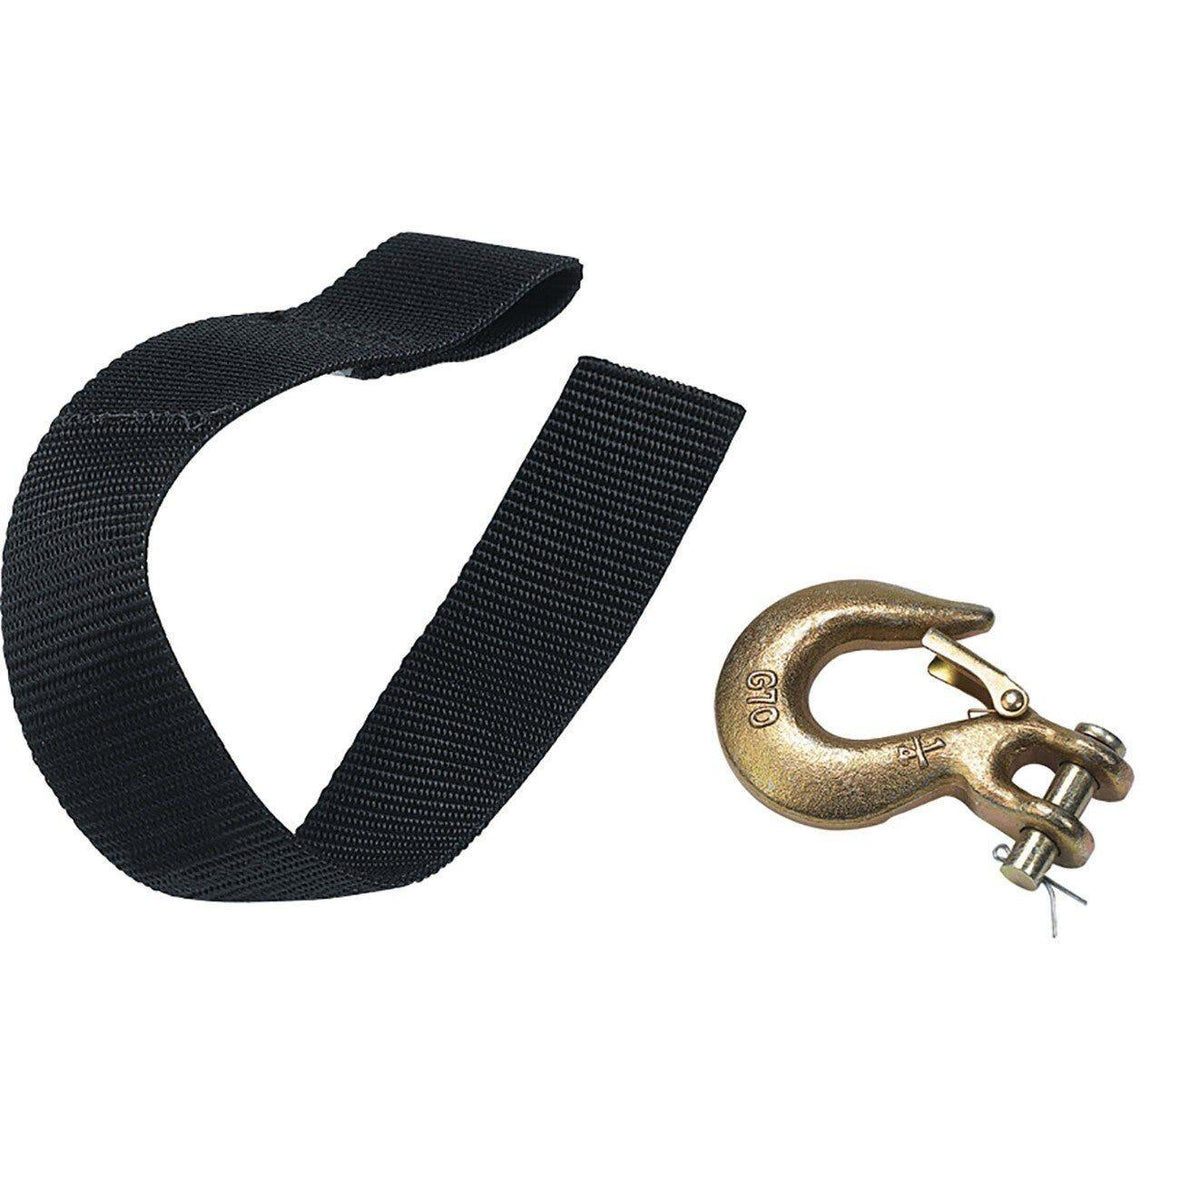 Hook with Safety Latch &amp; Strap Kit